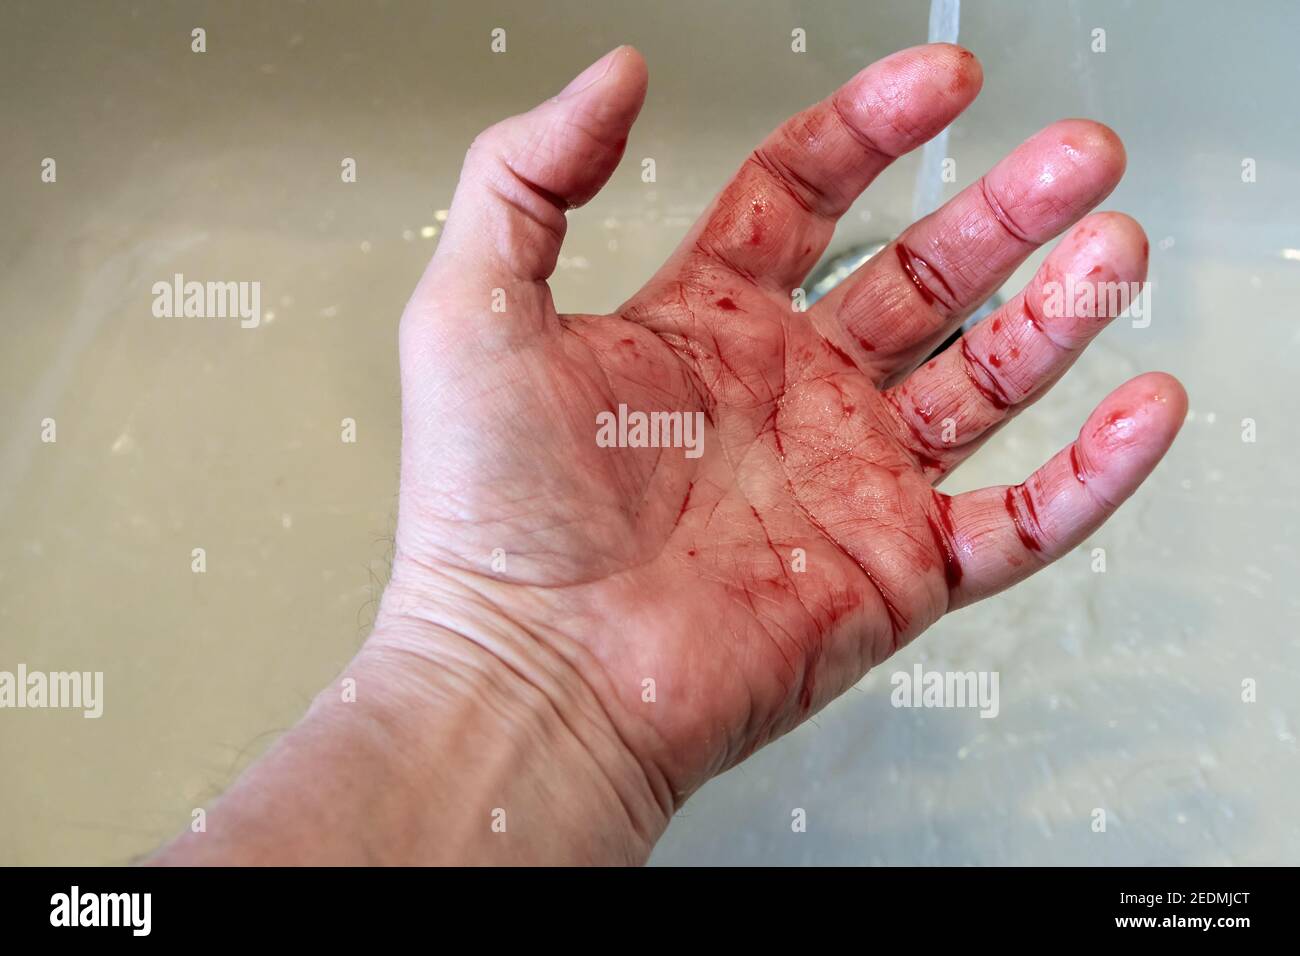 Main sanglante dans le lavabo de salle de bains, saignement, criminel et suicide concept Banque D'Images